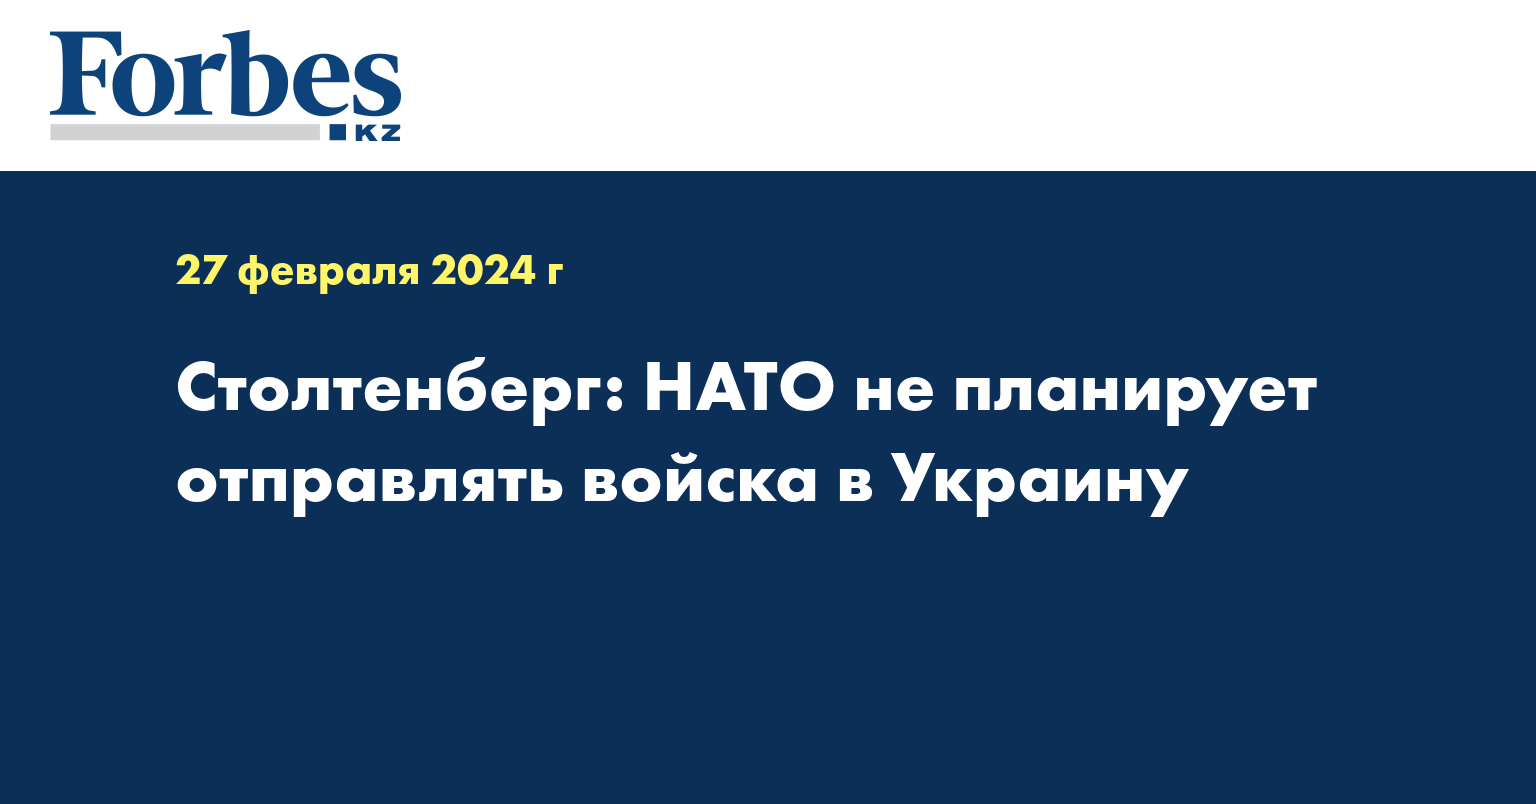 Столтенберг: НАТО не планирует отправлять войска в Украину